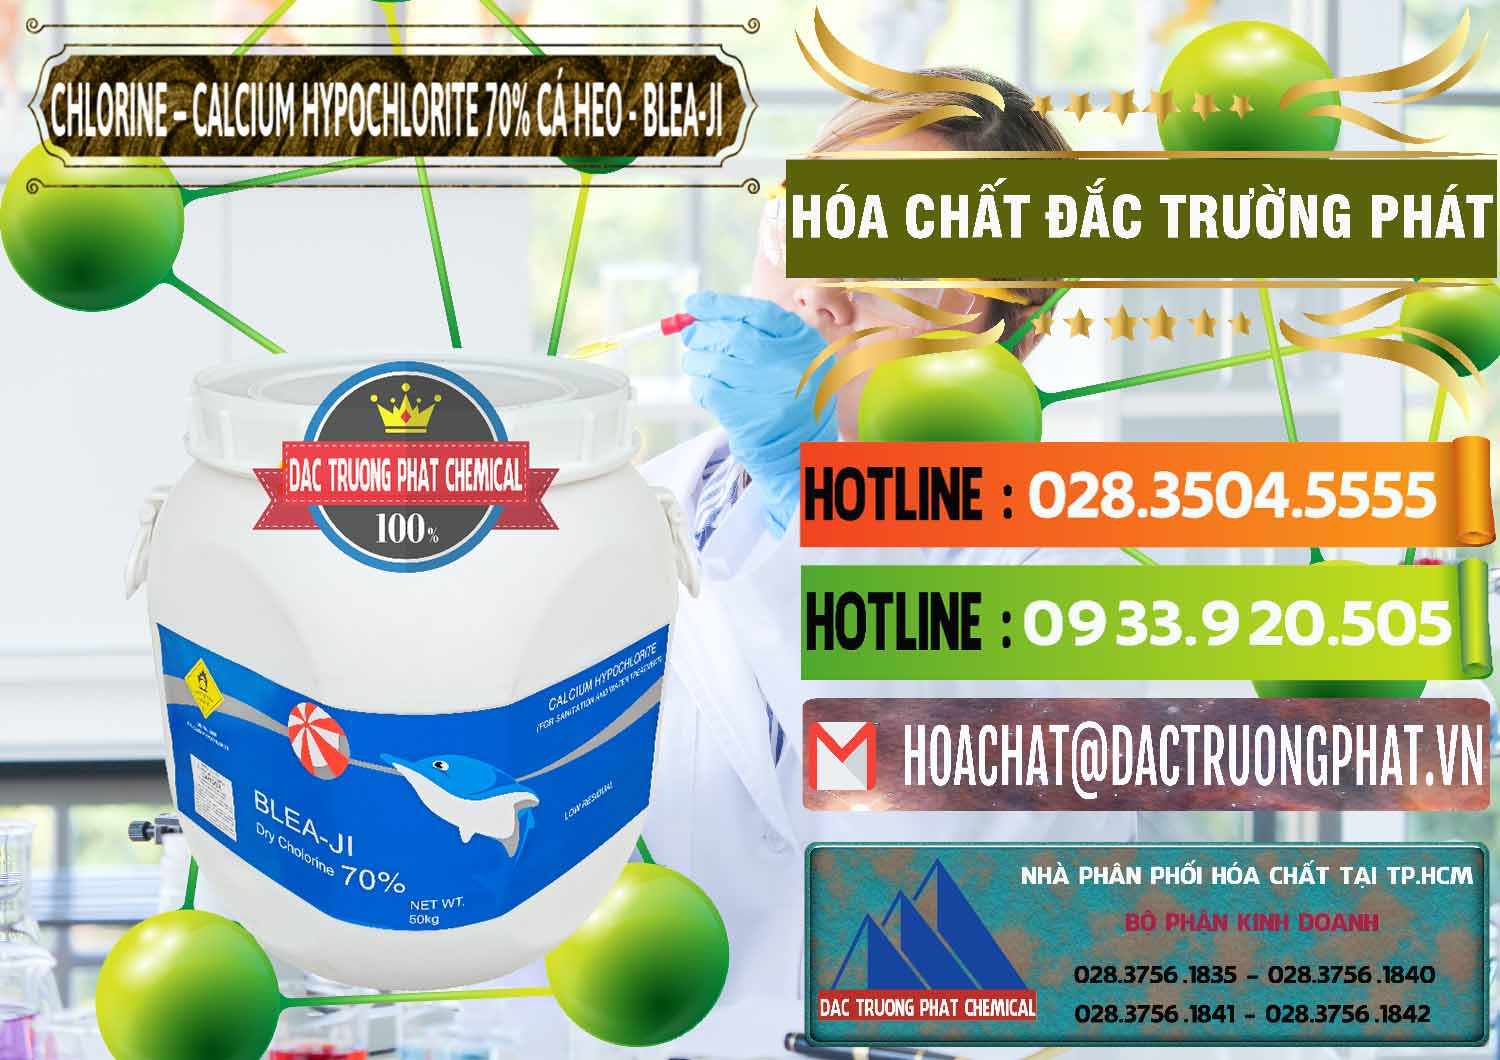 Công ty chuyên bán _ cung cấp Clorin - Chlorine Cá Heo 70% Blea-Ji Trung Quốc China - 0056 - Công ty chuyên phân phối - bán hóa chất tại TP.HCM - cungcaphoachat.com.vn